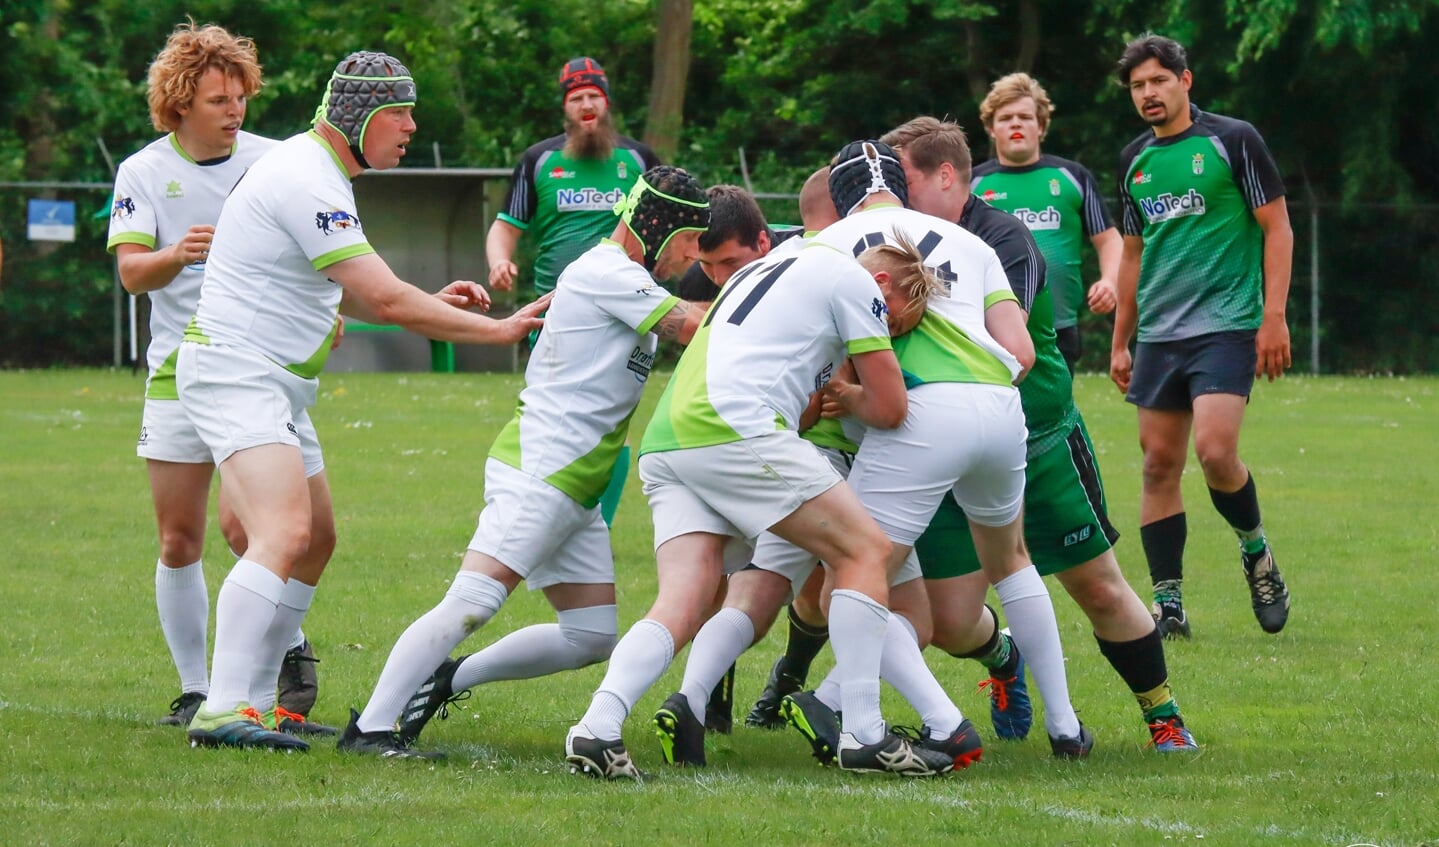 De rugbyers uit de polder spelen in het groen-wit